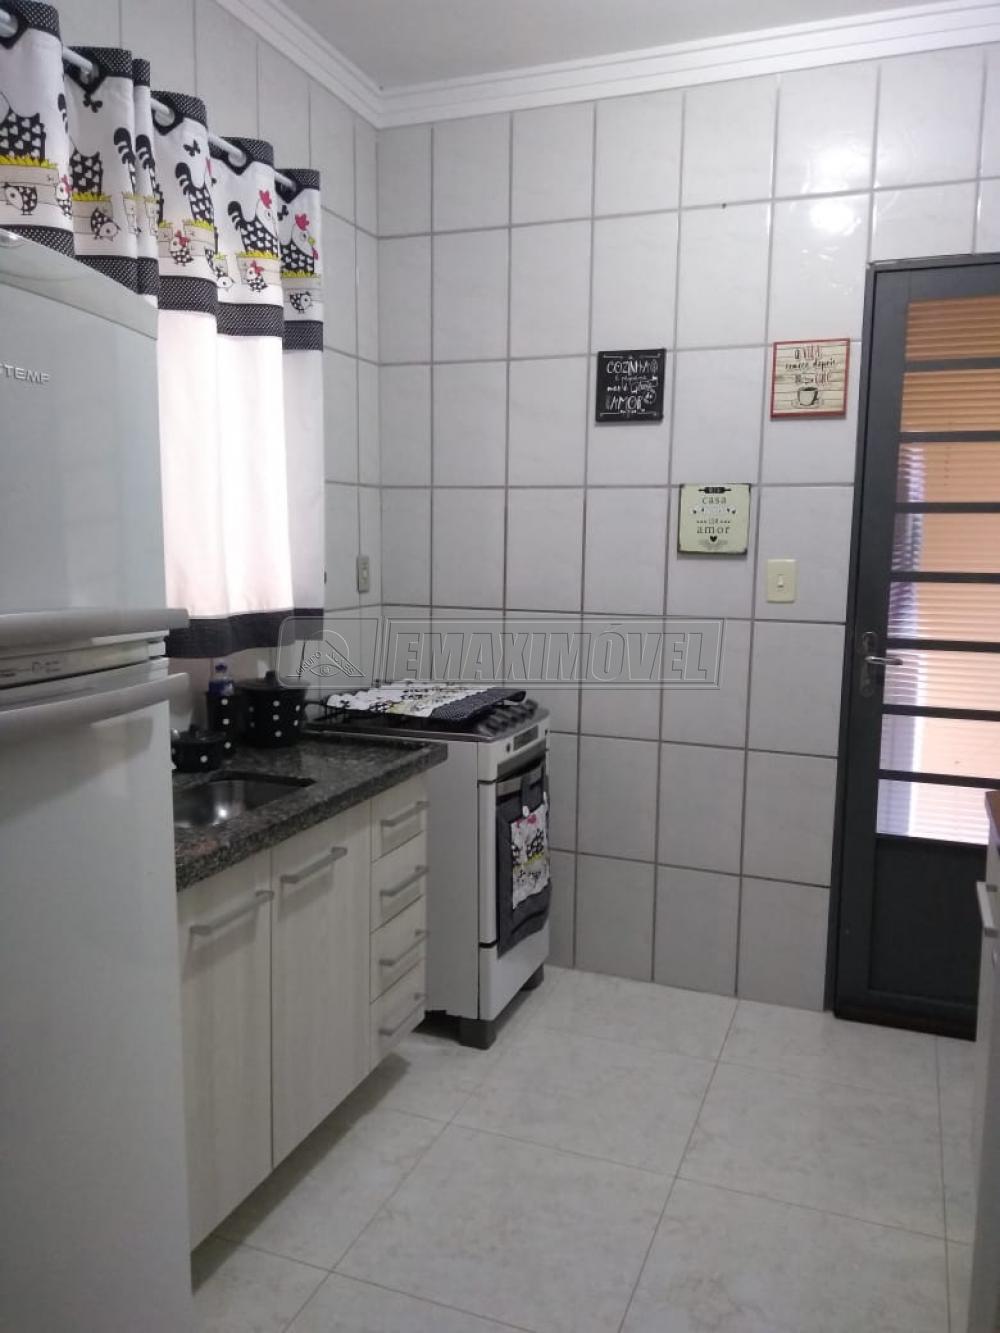 Comprar Casa / em Bairros em Sorocaba R$ 280.000,00 - Foto 12